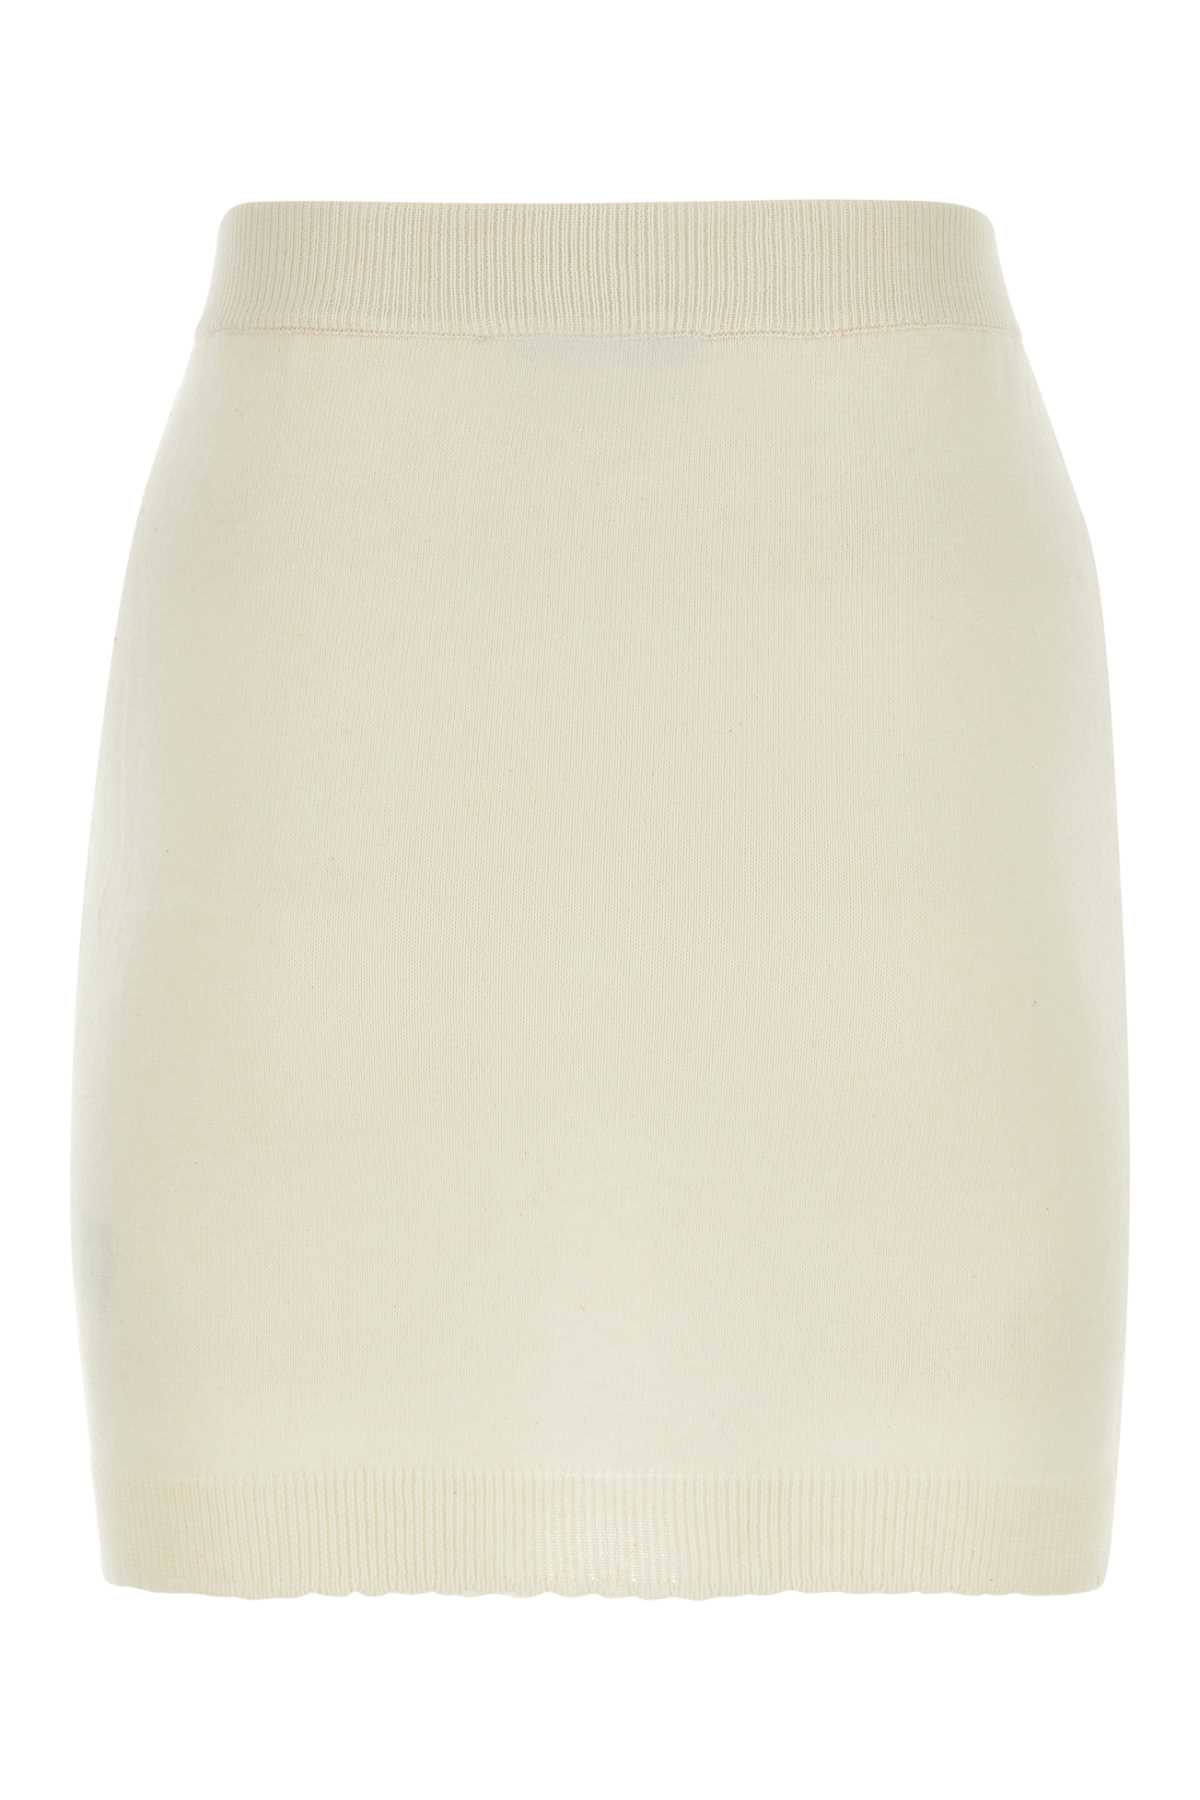 Vivienne Westwood Ivory Cotton Blend Miniskirt In Cream